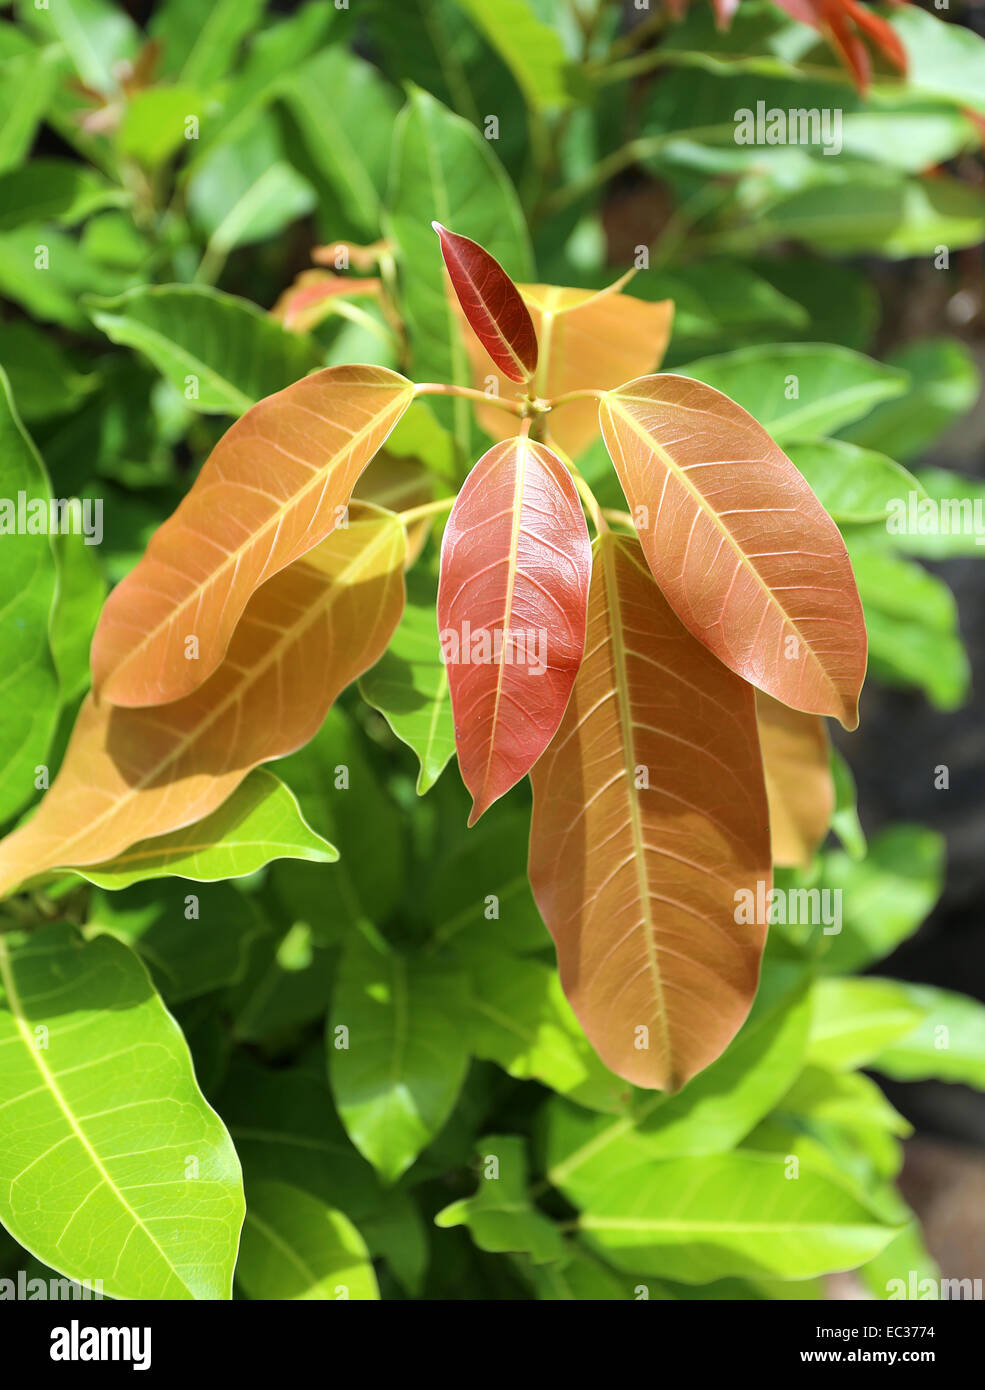 Rosa foto belle foglie tropicali illuminata dal sole Foto Stock